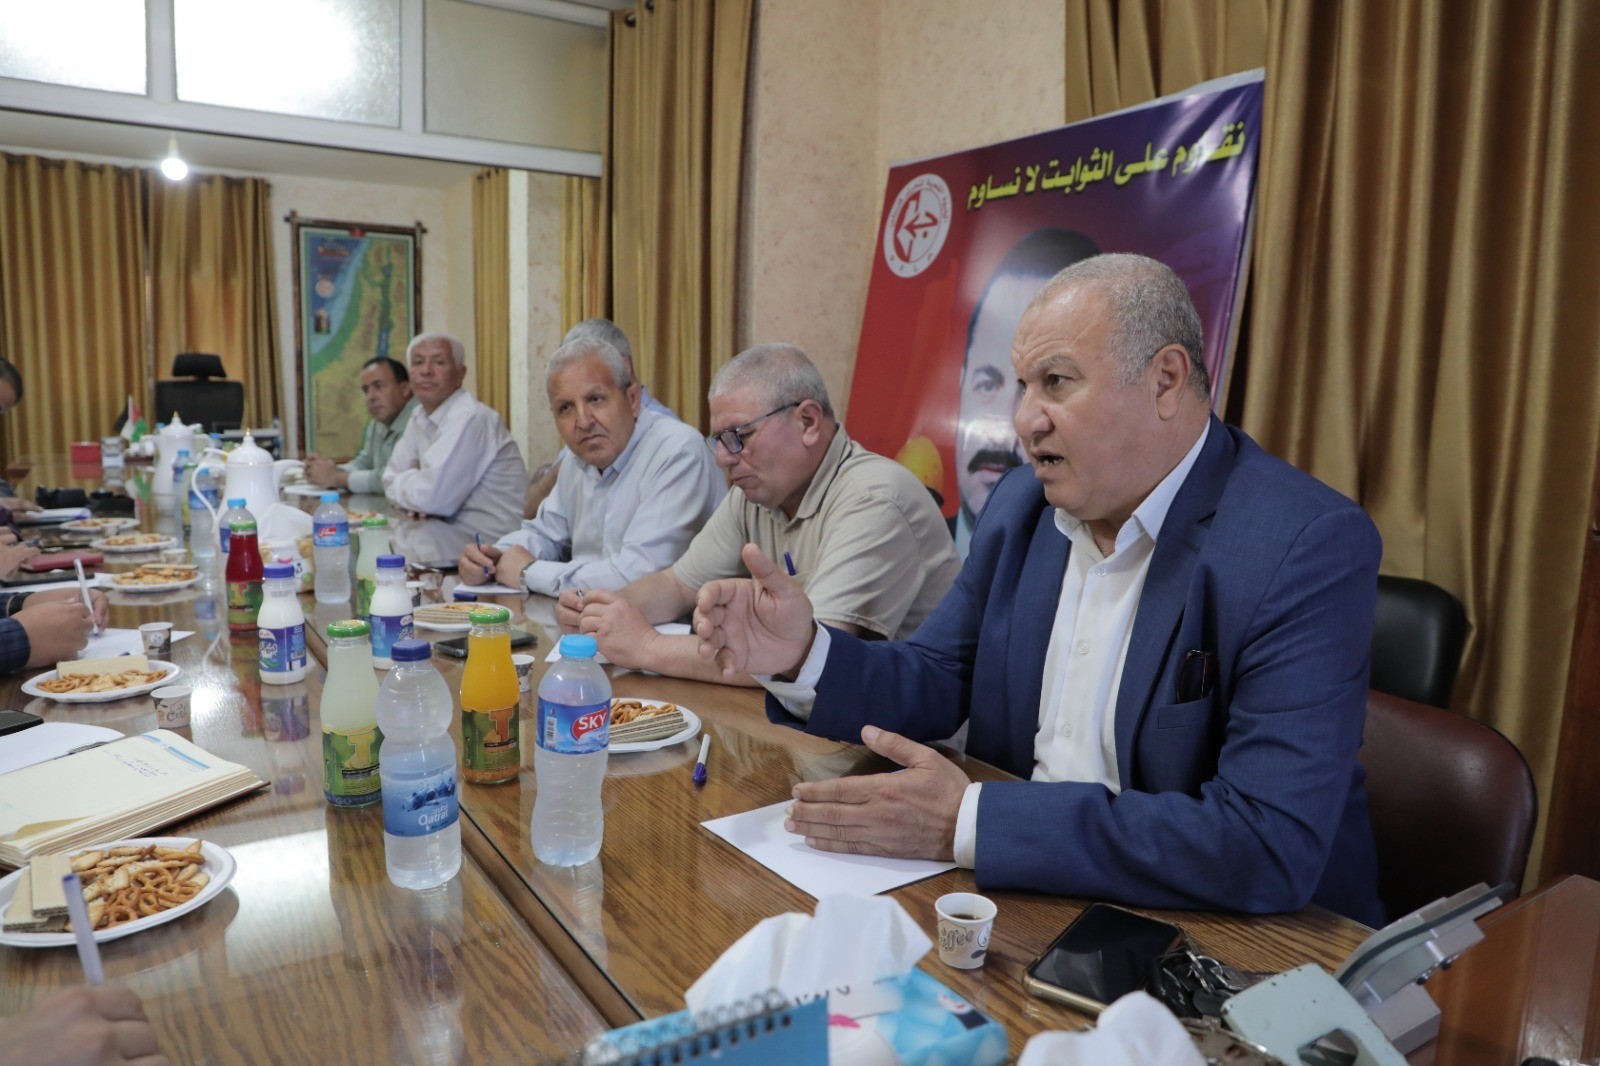 لجنة العمل النقابي في الجبهة الشعبية تستقبل وفدًا من وزارة العمل بغزة 4.jpg